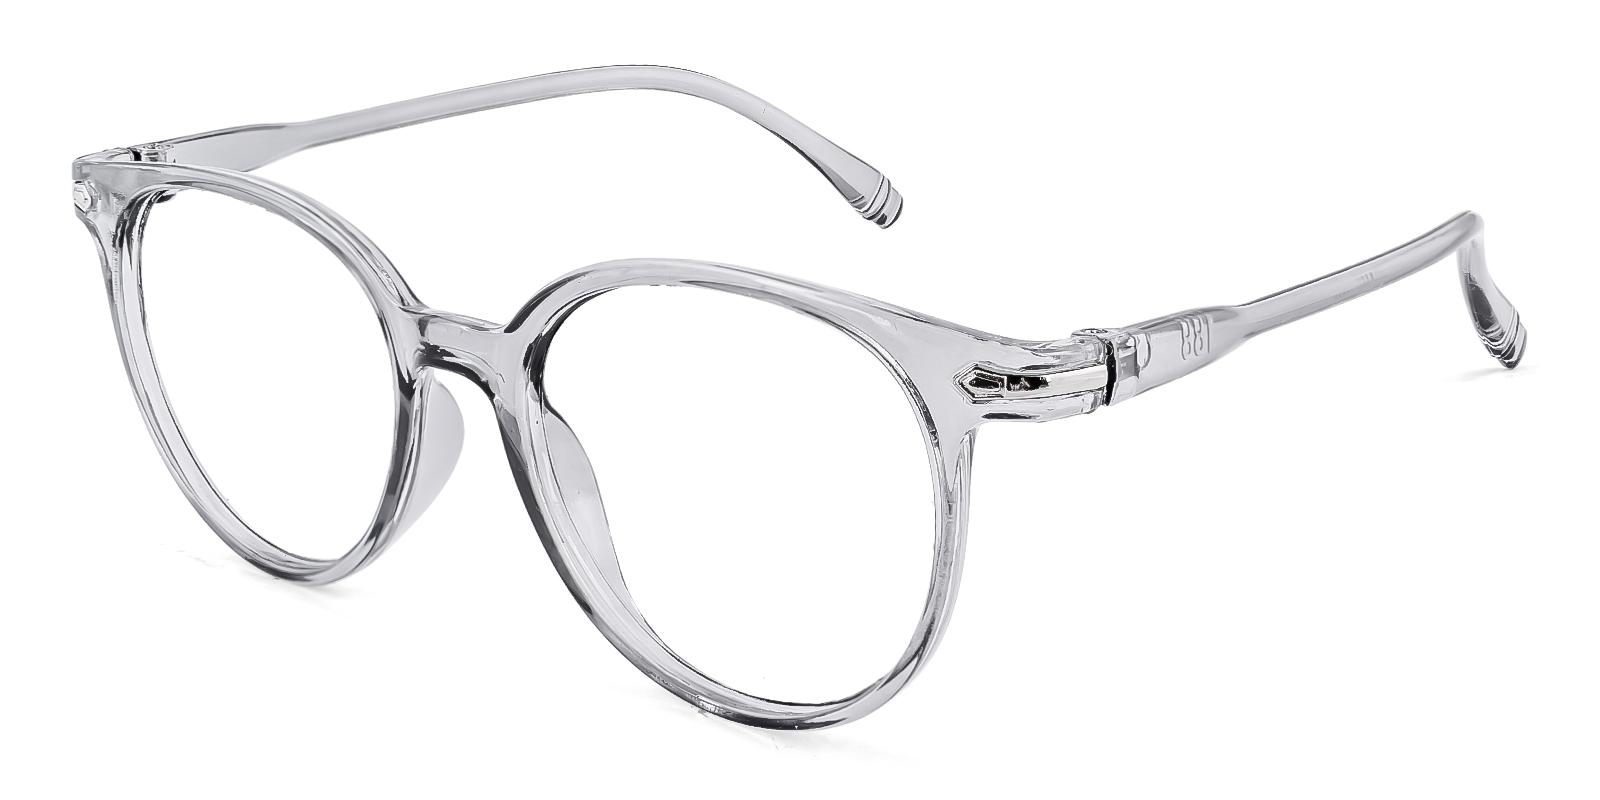 Frommular Gray Plastic Eyeglasses , UniversalBridgeFit Frames from ABBE Glasses